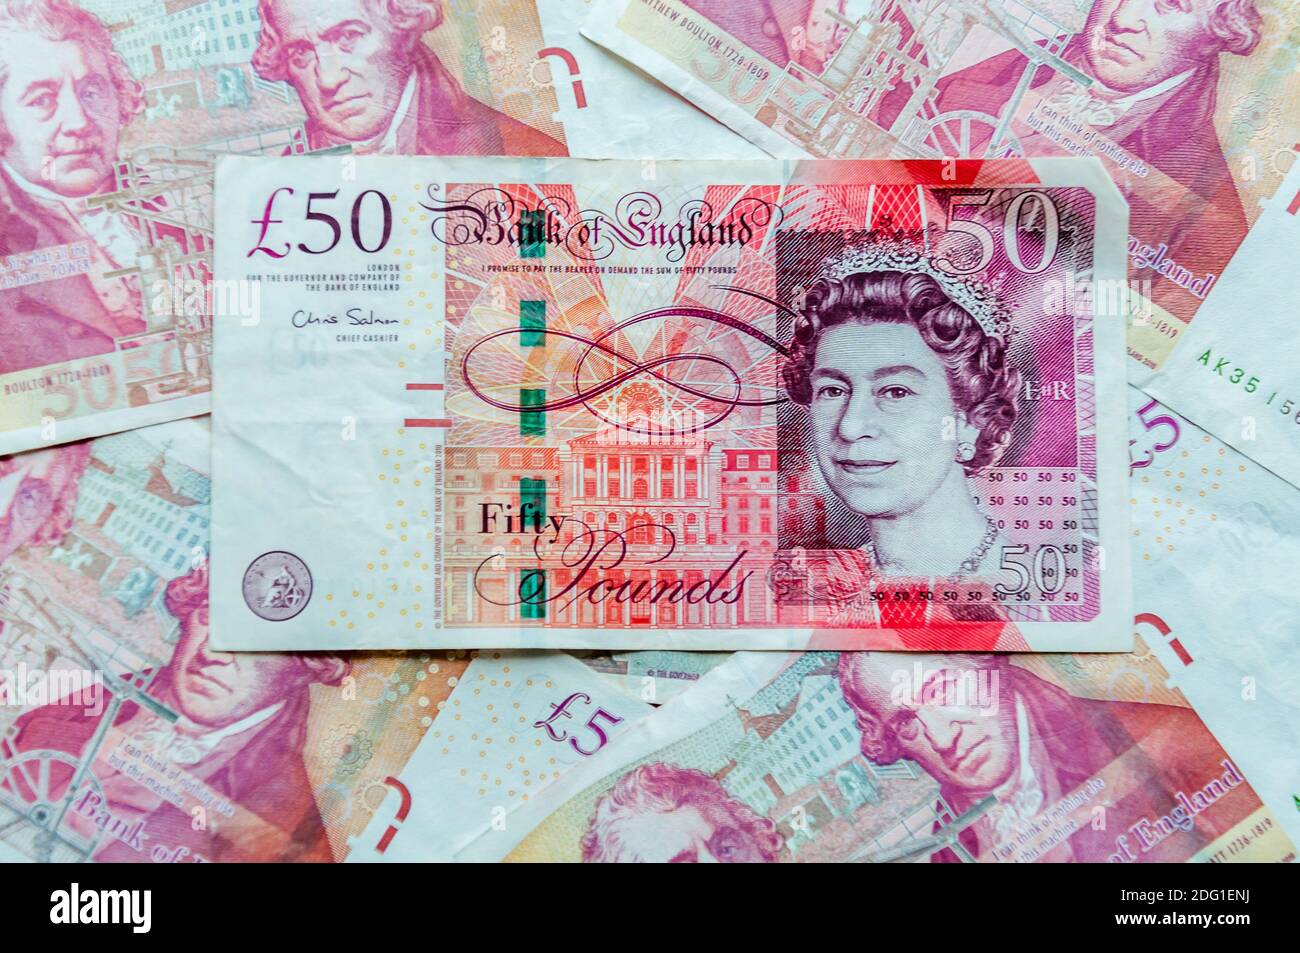 Un primer plano de billetes británicos de 50 libras esterlinas, hilo, Marca de agua, microlettering, característica UV, ver-a través de dispositivo de registro Foto de stock